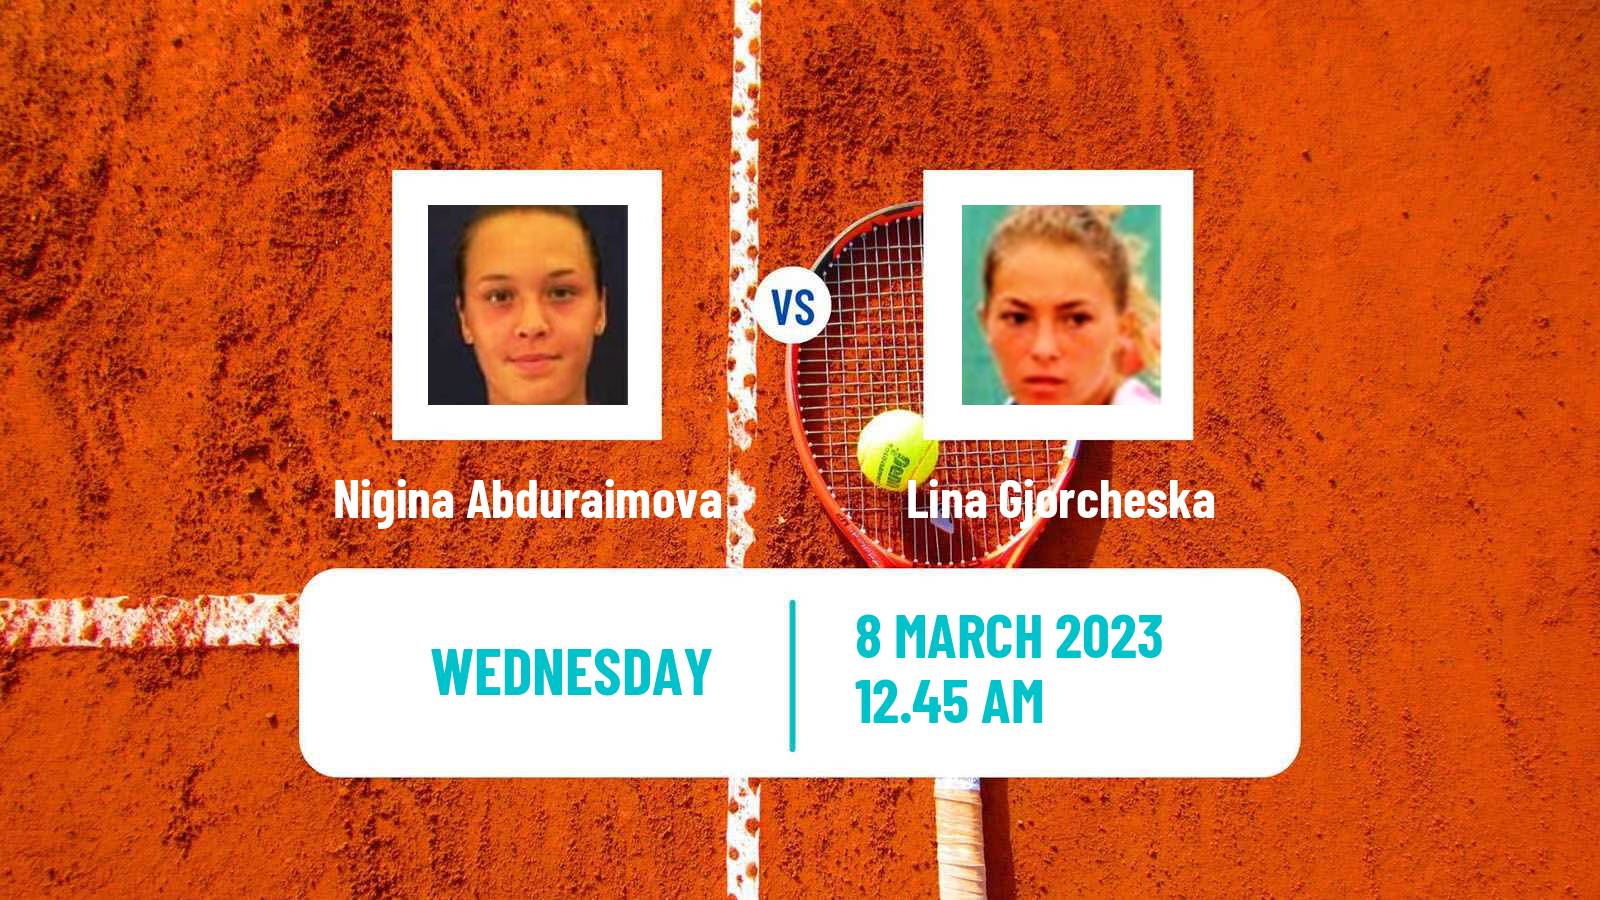 Tennis ITF Tournaments Nigina Abduraimova - Lina Gjorcheska